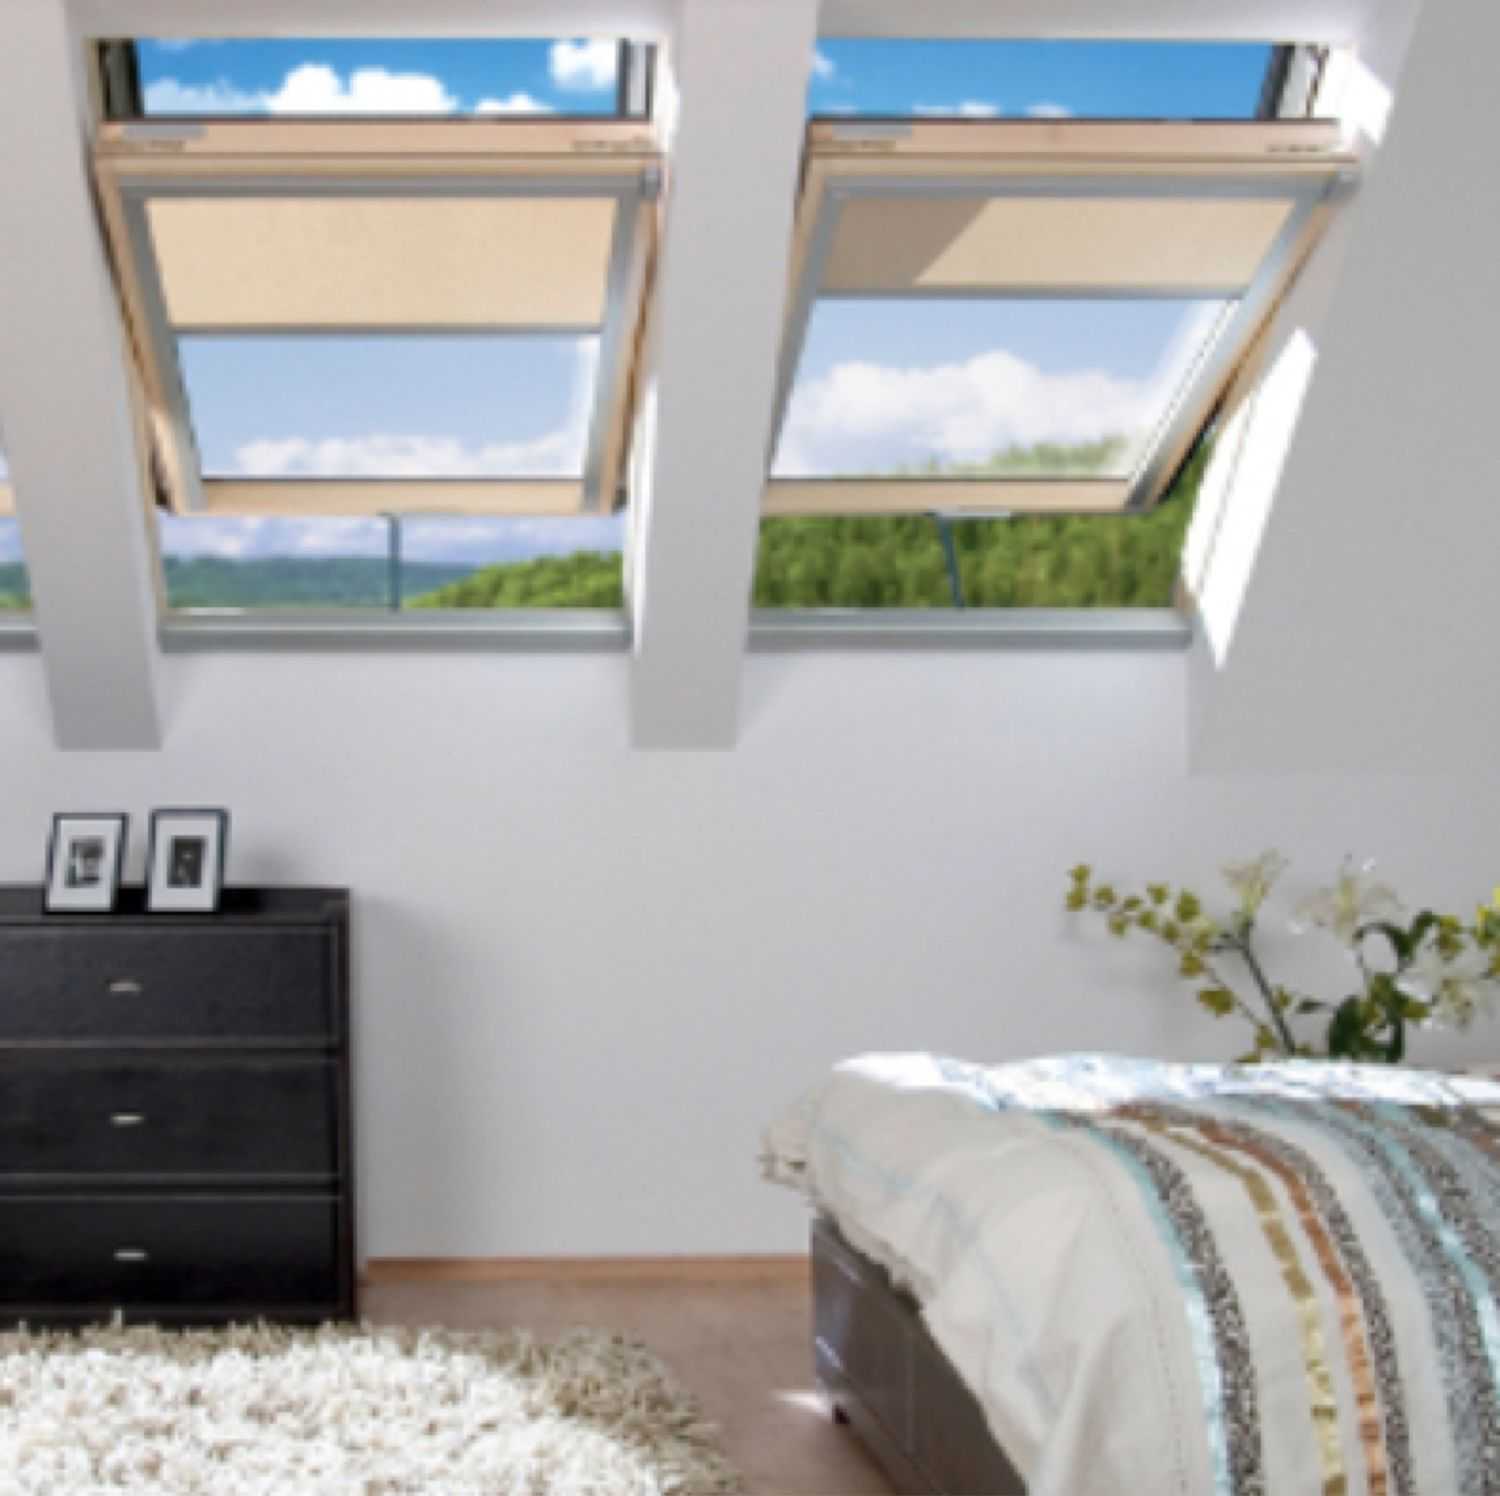 Как повесить шторы на нестандартные окна - фото, идеи, варианты